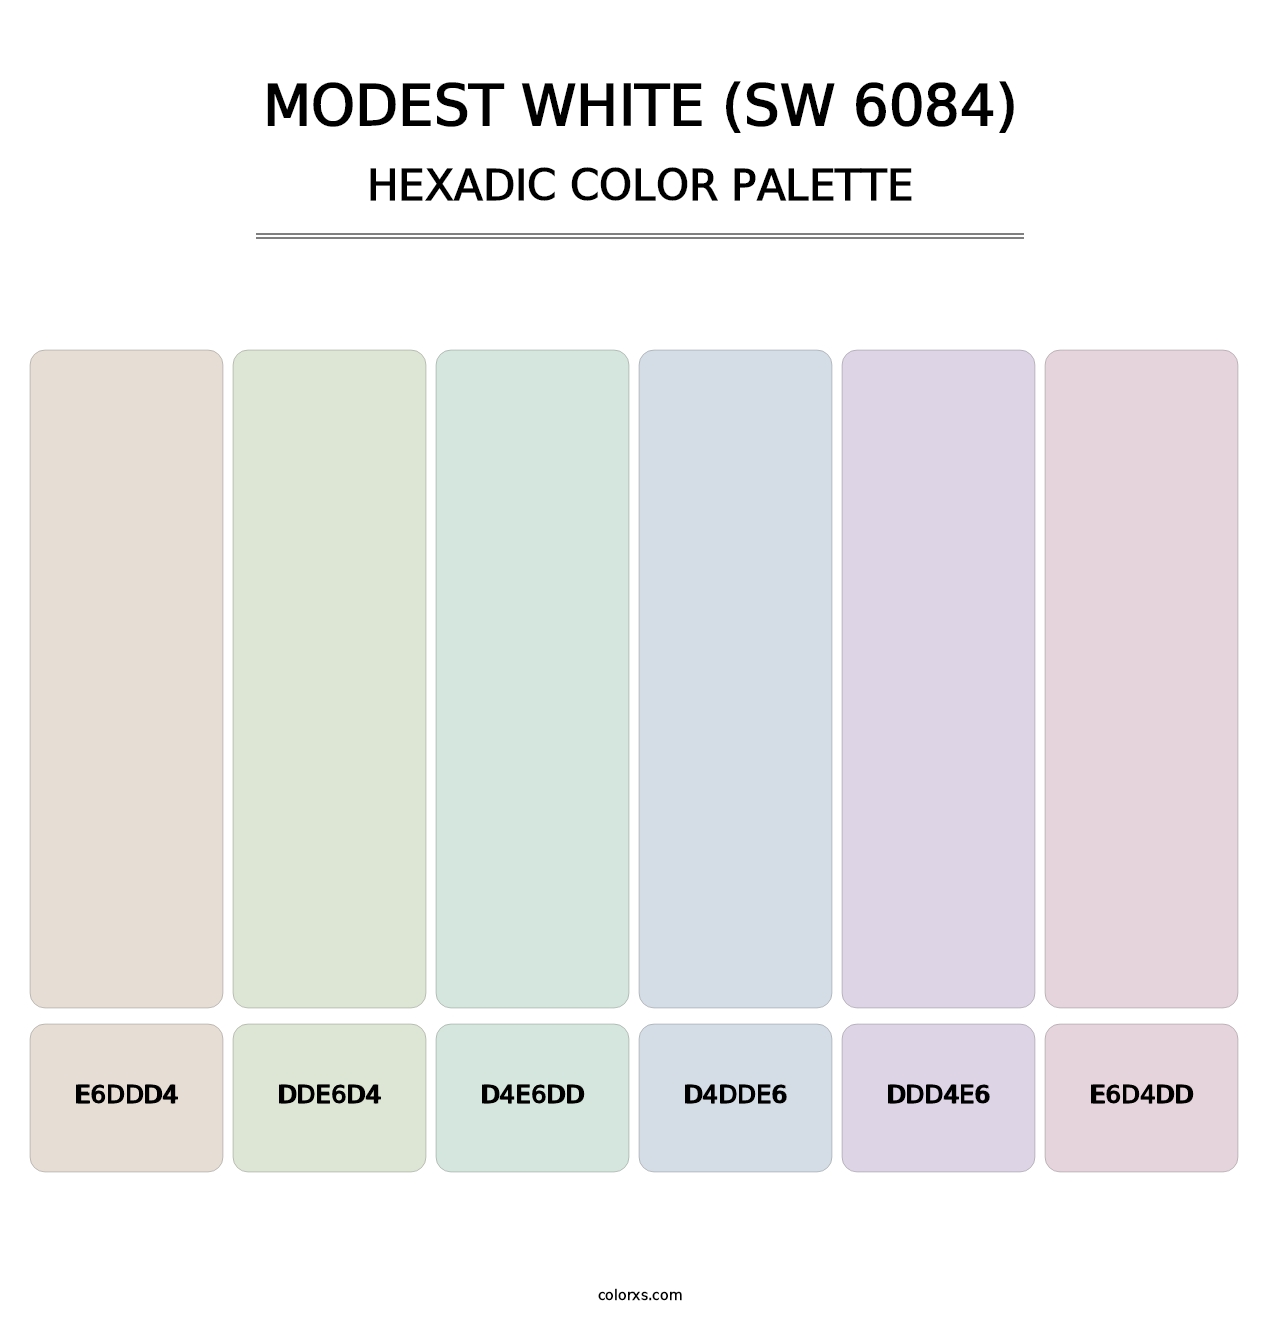 Modest White (SW 6084) - Hexadic Color Palette